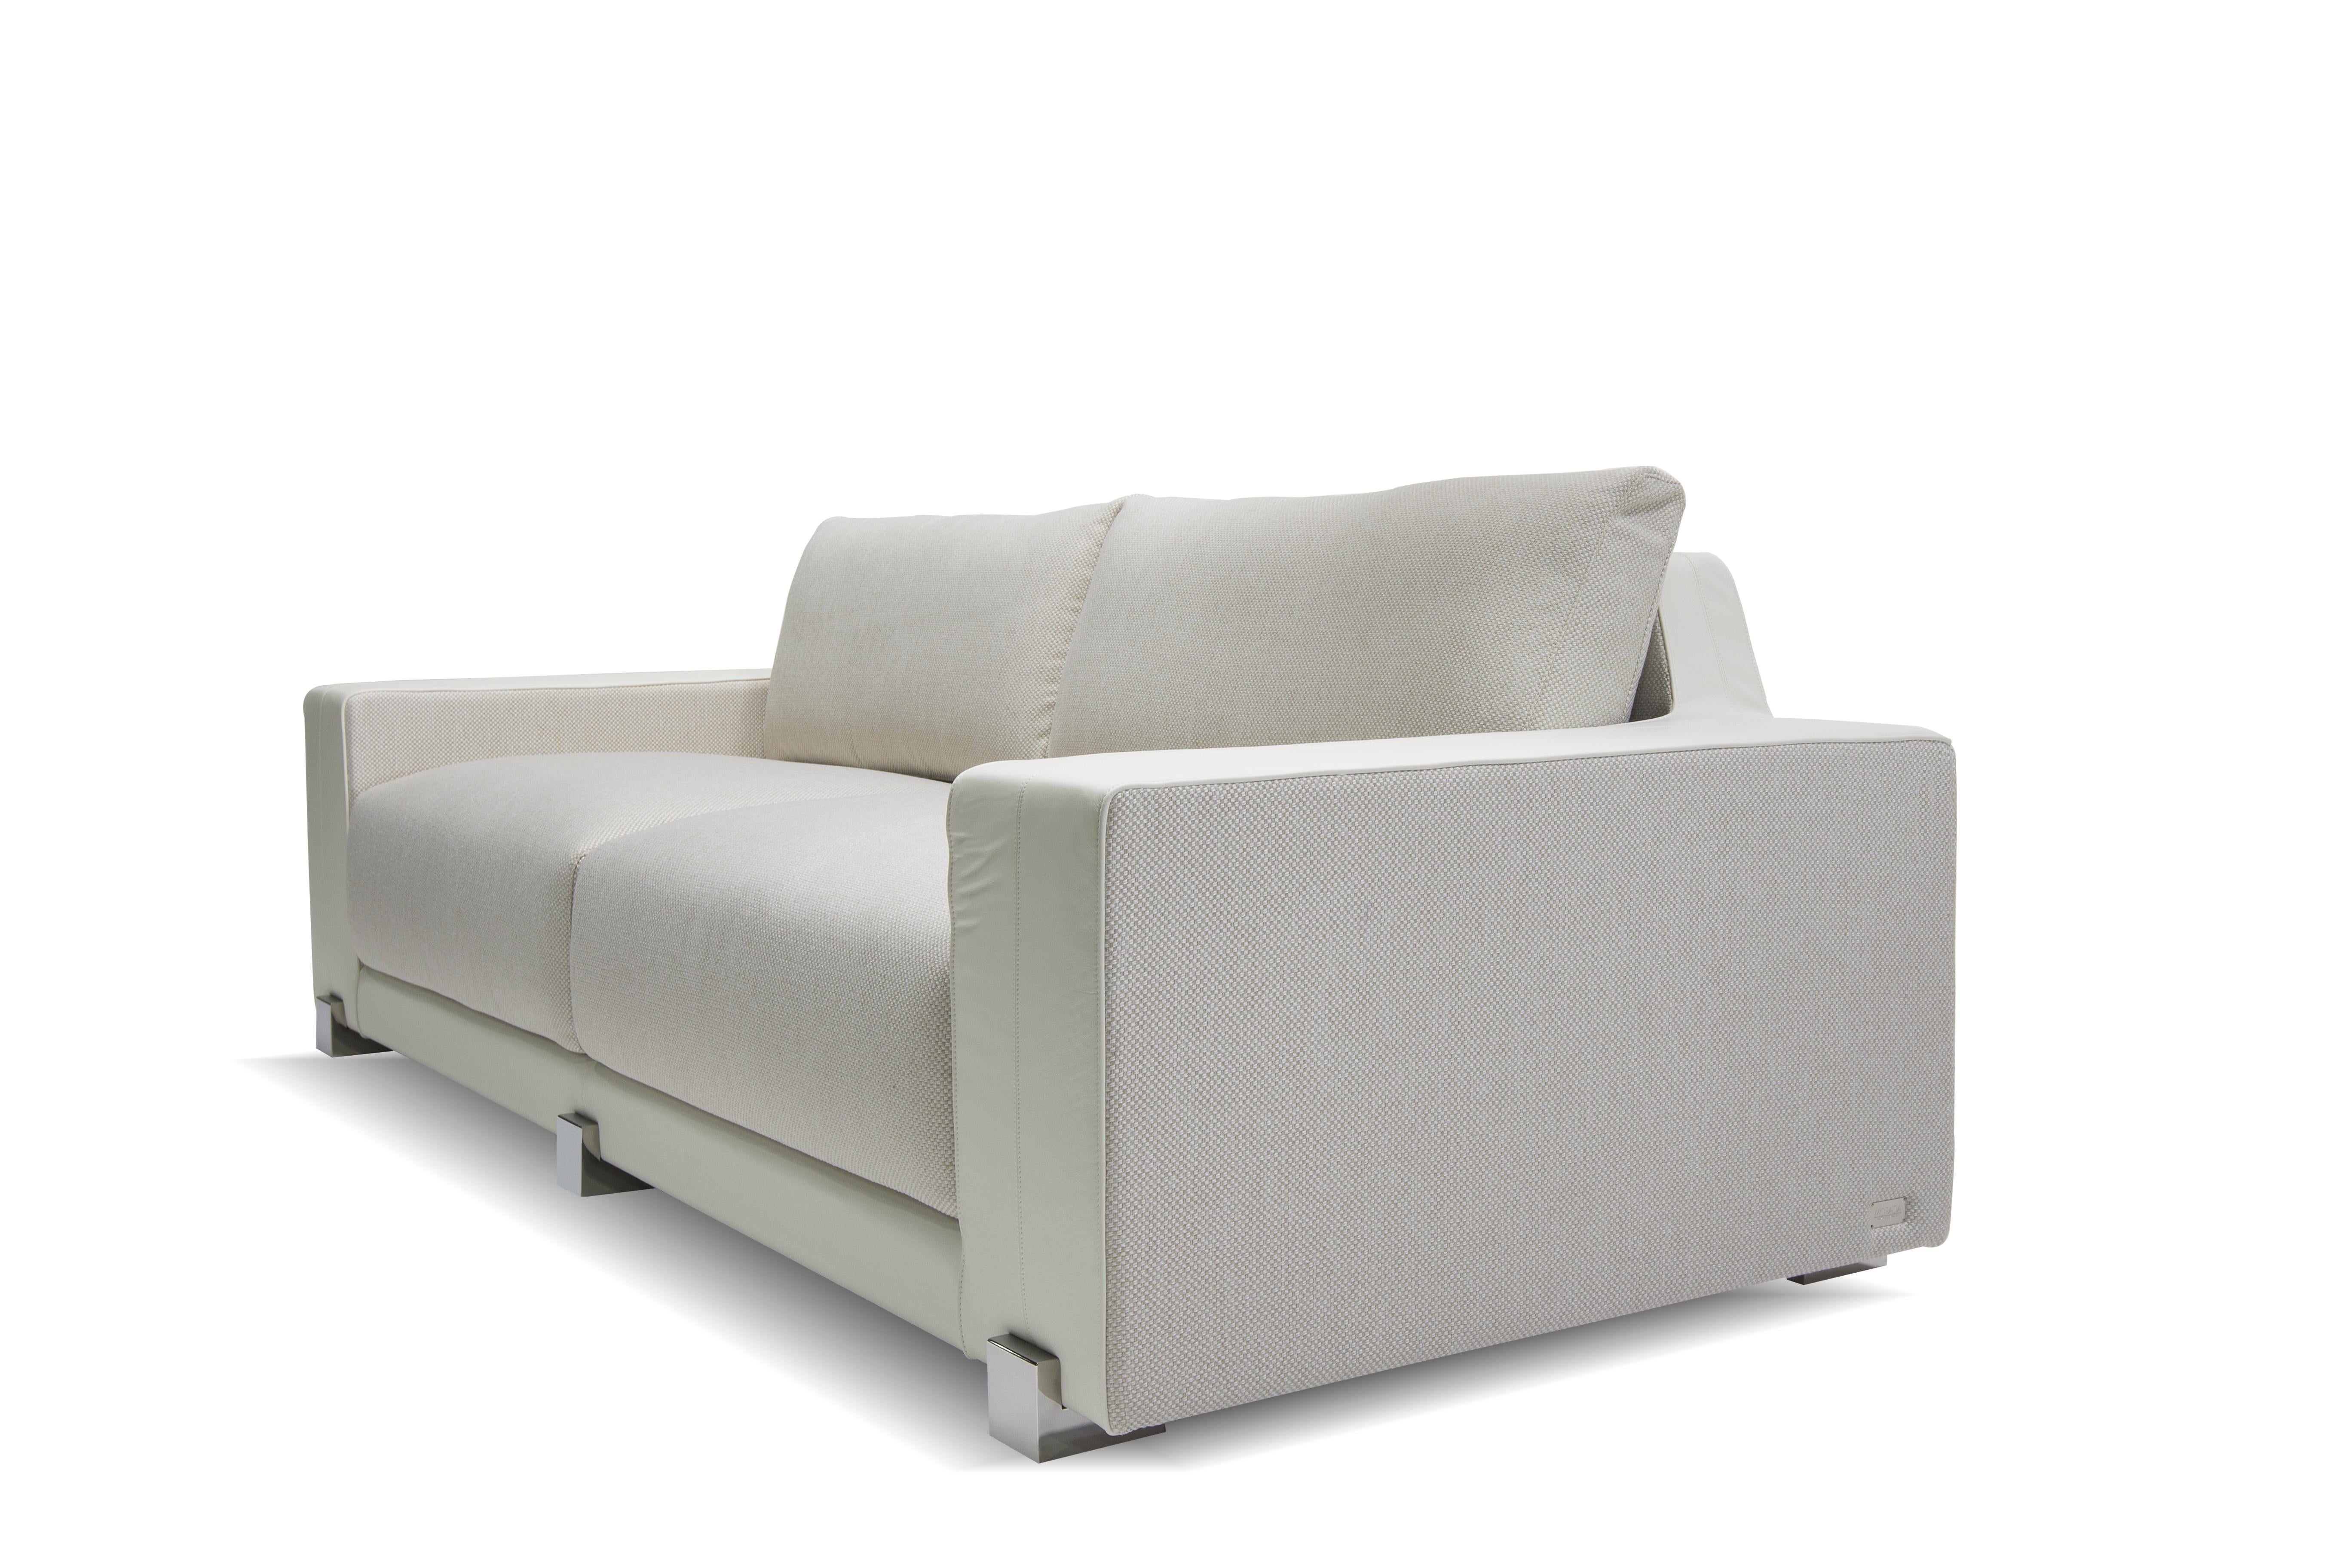 Das Sofa GONNA ist eine zeitgenössische Interpretation der Physik des Komforts und spielt mit der Kombination von Leder und Stoff, was es zu einem eleganten und zugleich gemütlichen Ort der Entspannung macht. Die flauschige Polsterung verleiht